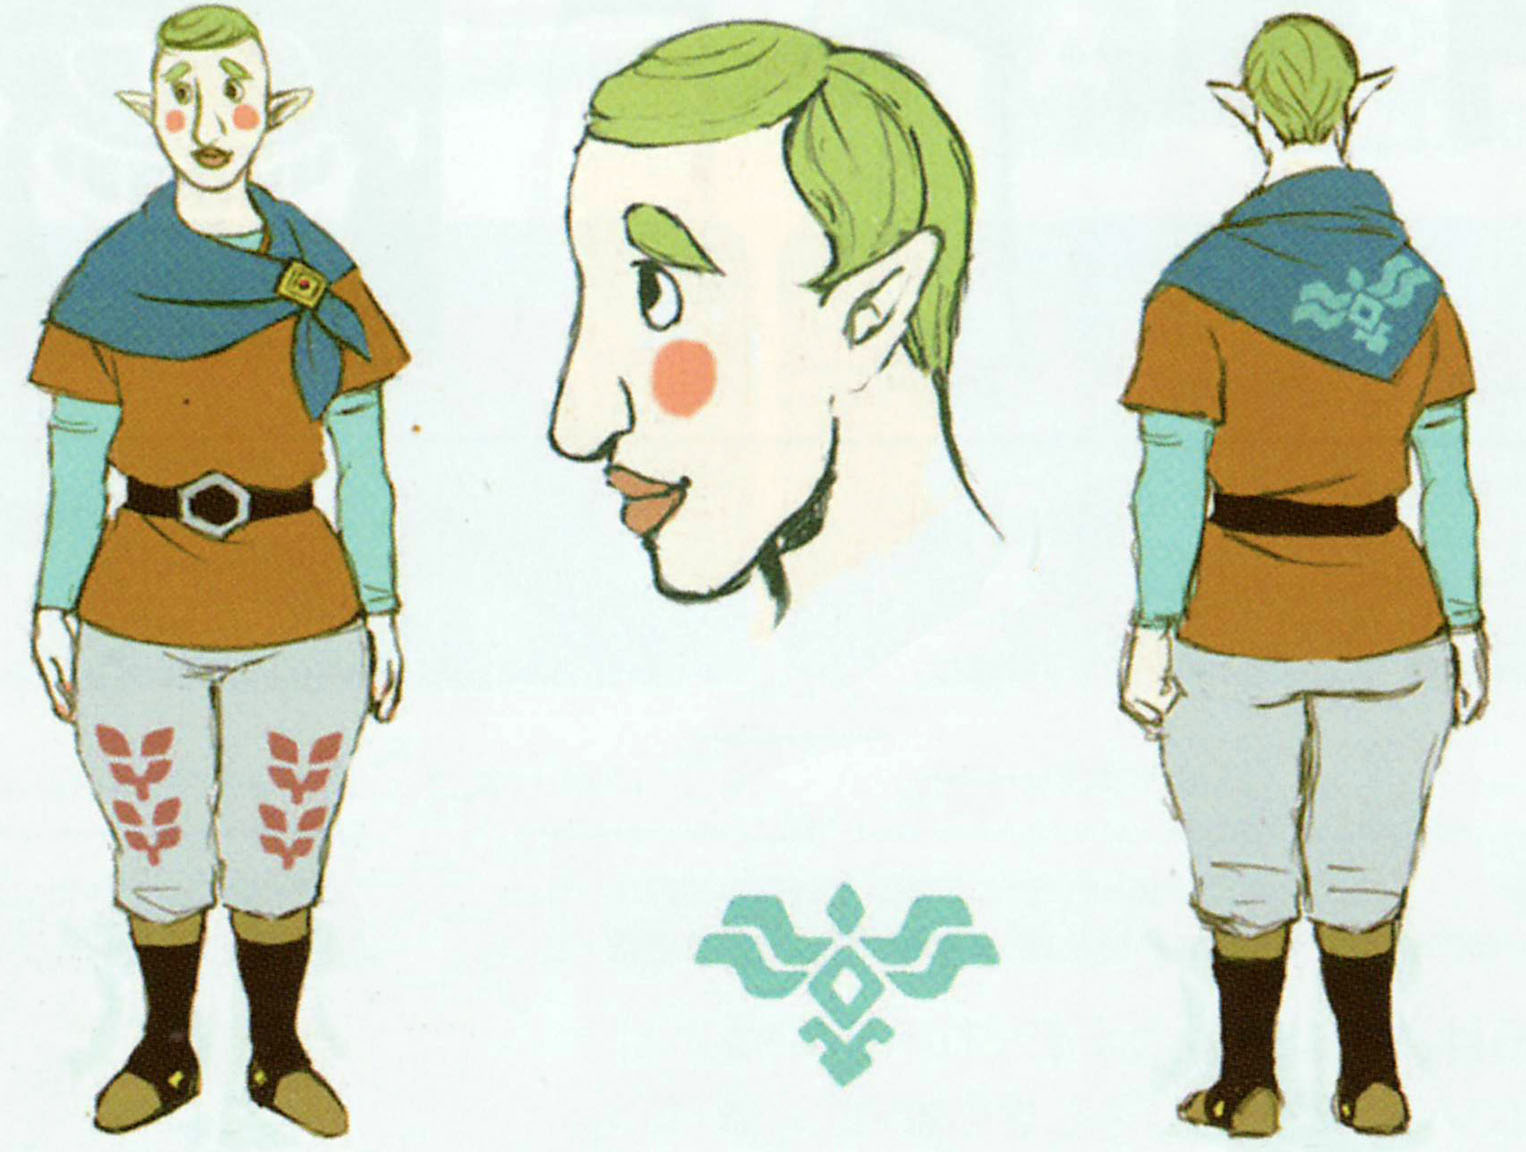 Fledge from The Legend of Zelda - Game Art1526 x 1152